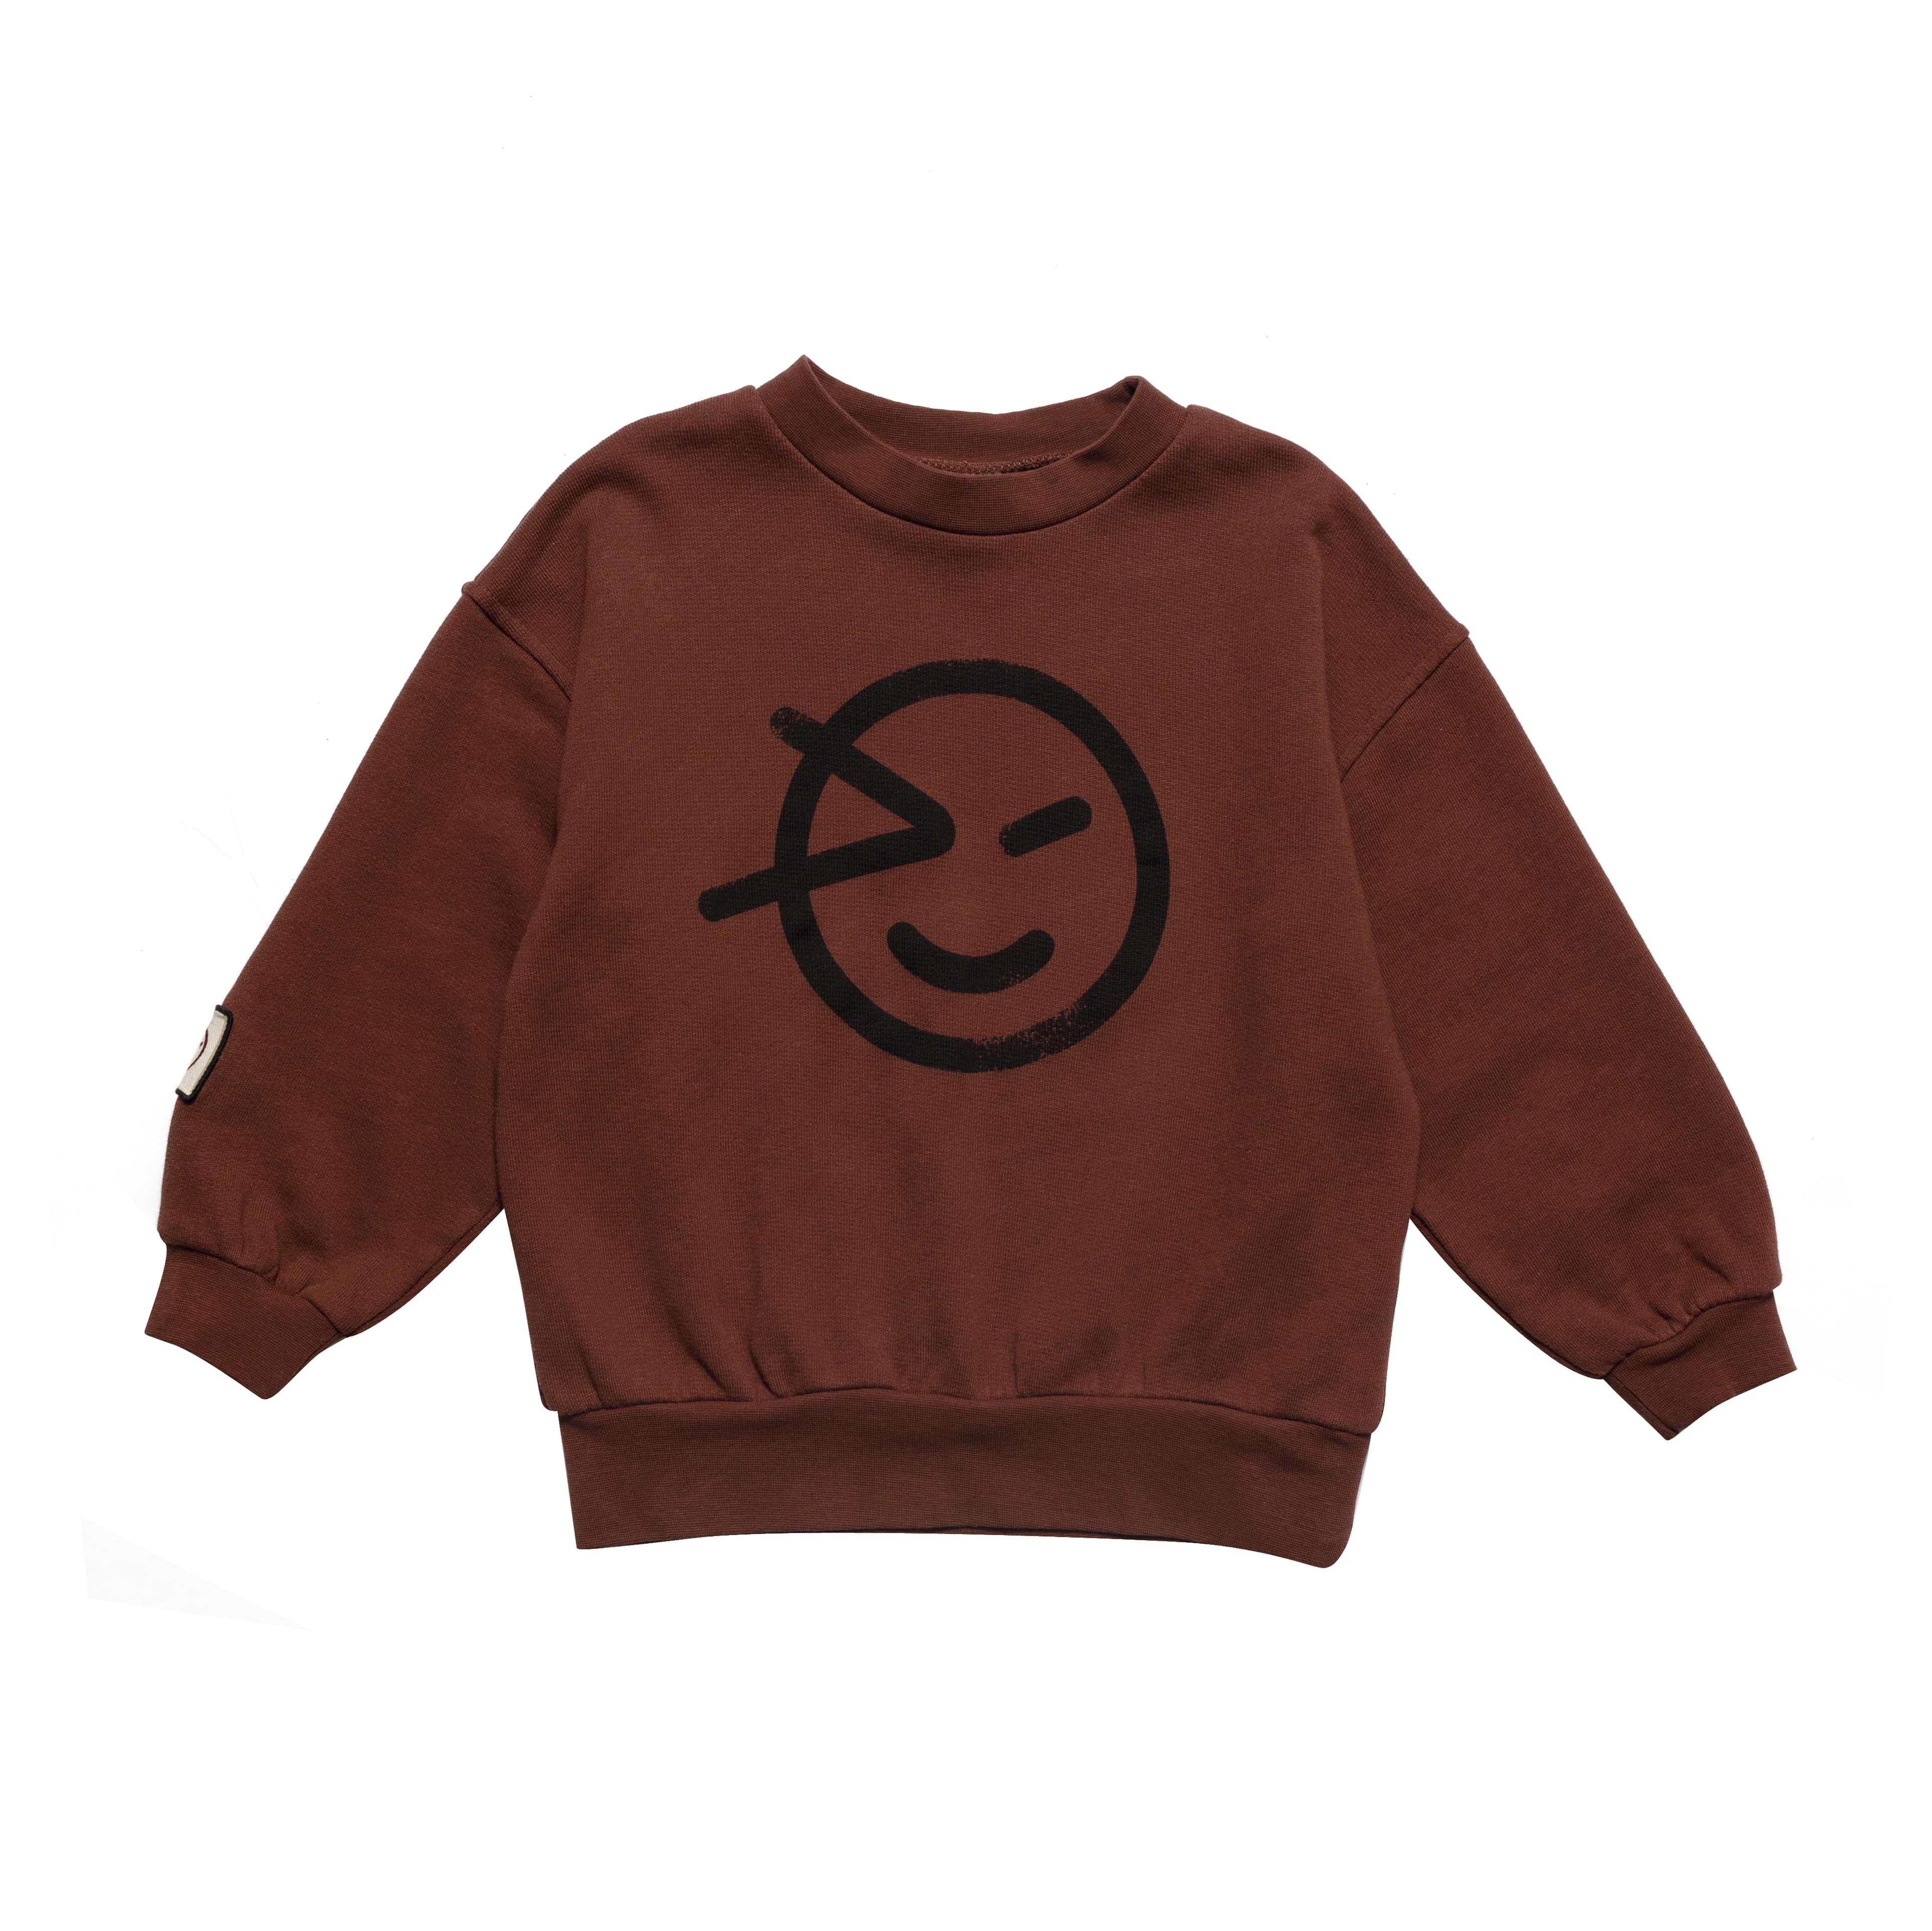 Boys & Girls Dark Brown Cotton Sweatshirt